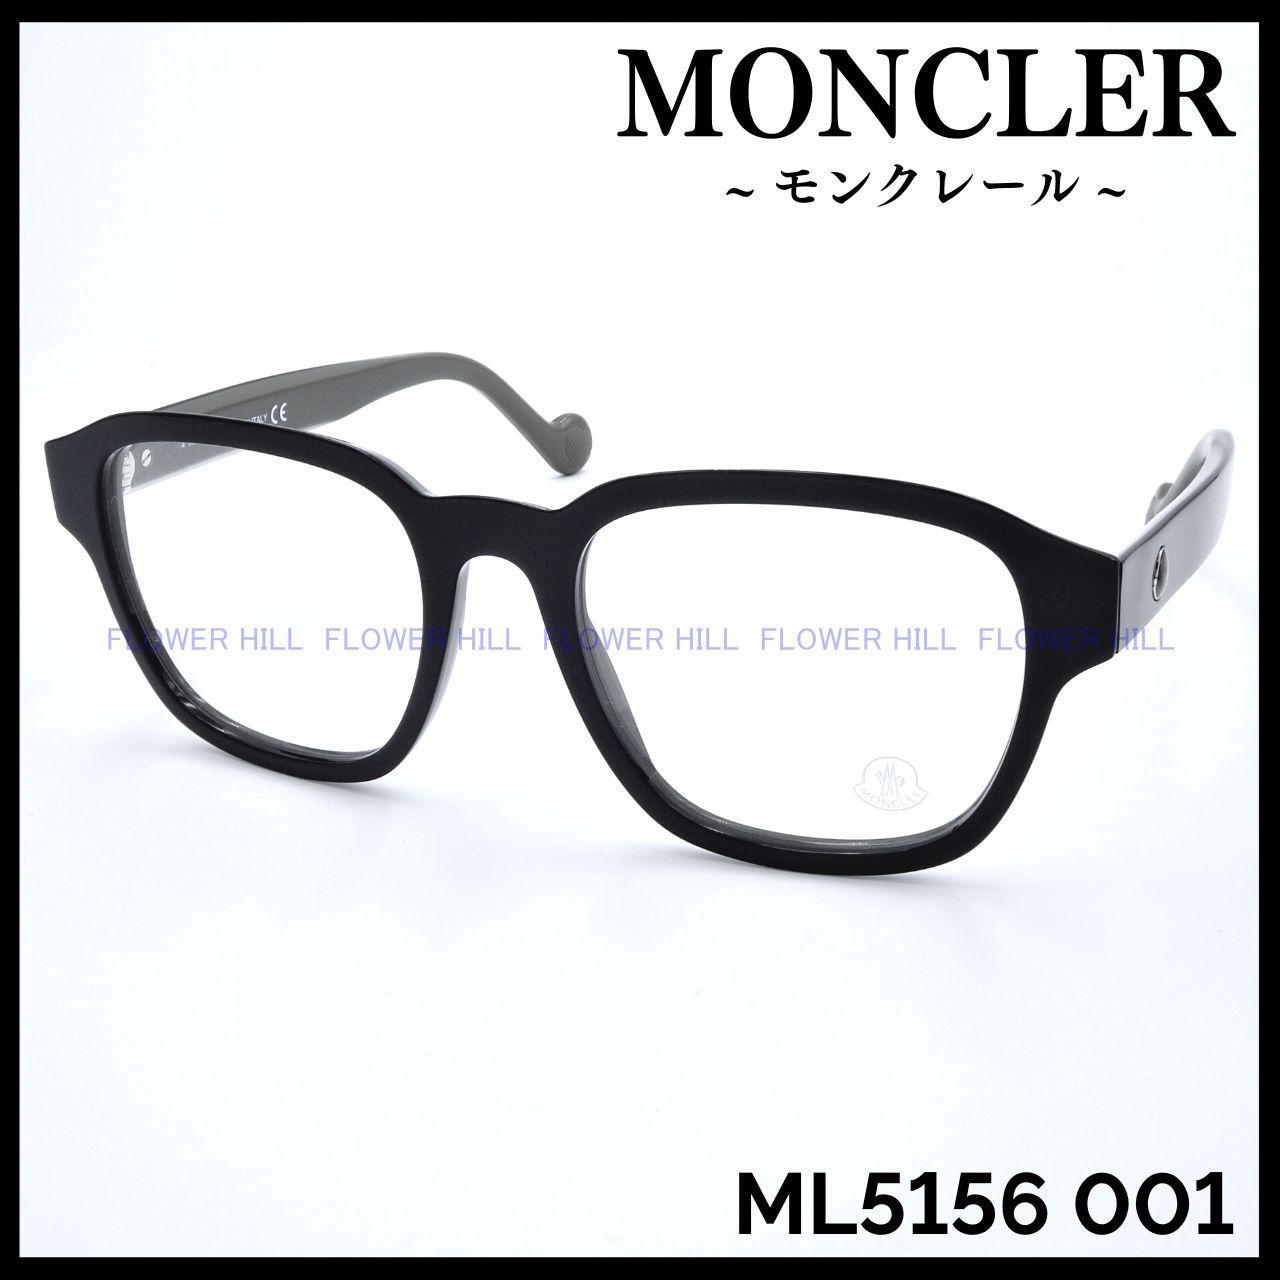 モンクレール ML5156 001 メガネ フレーム ブラック イタリア製